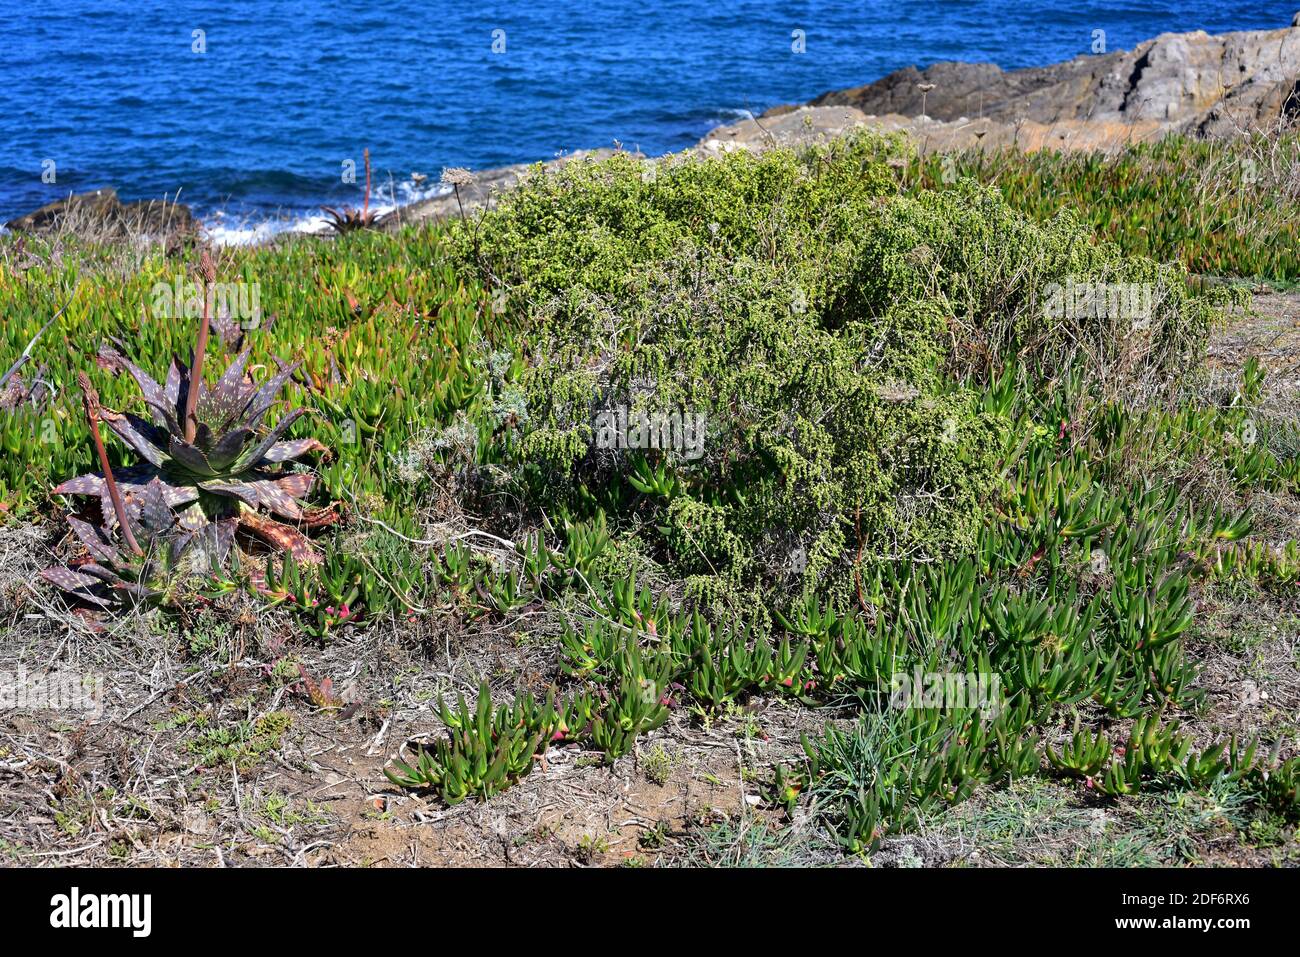 Boalaga (Thymelaea hirsuta) is a perennial shrub native to Mediterranean Basin coasts. Next to Thymelaea are invasive plants as Mesembryanthemum Stock Photo